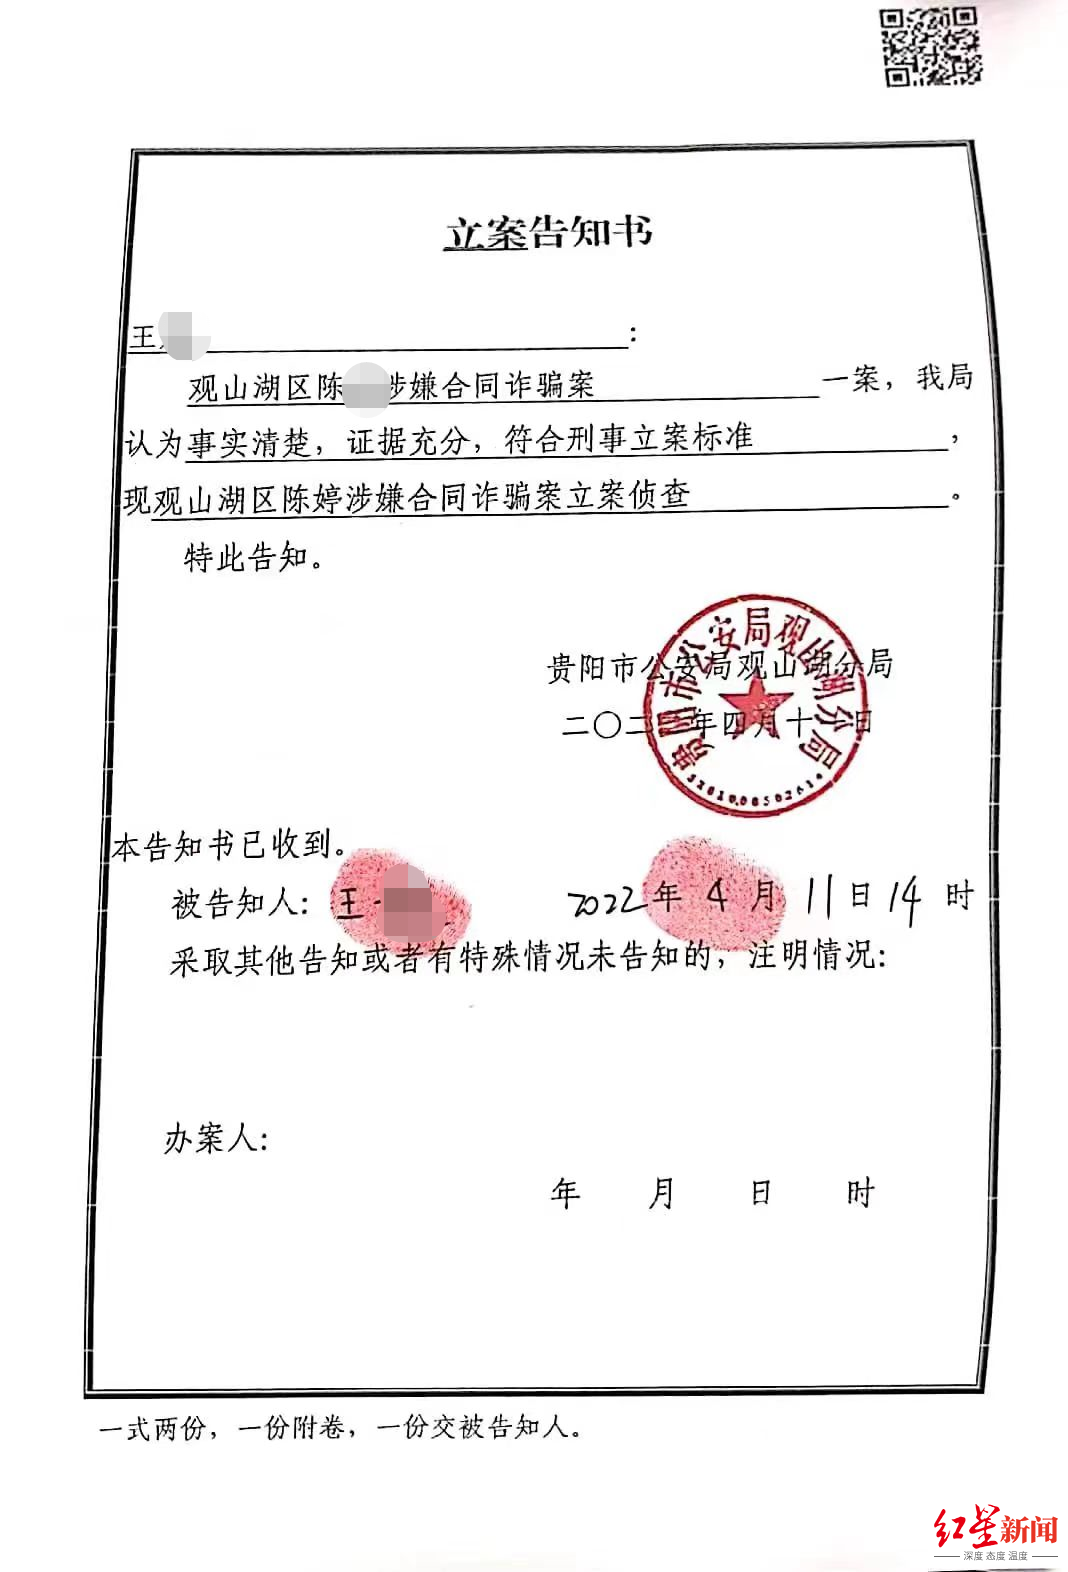 立案告知书广东平威律师事务所主任律师张卫平告诉红星资本局,根据